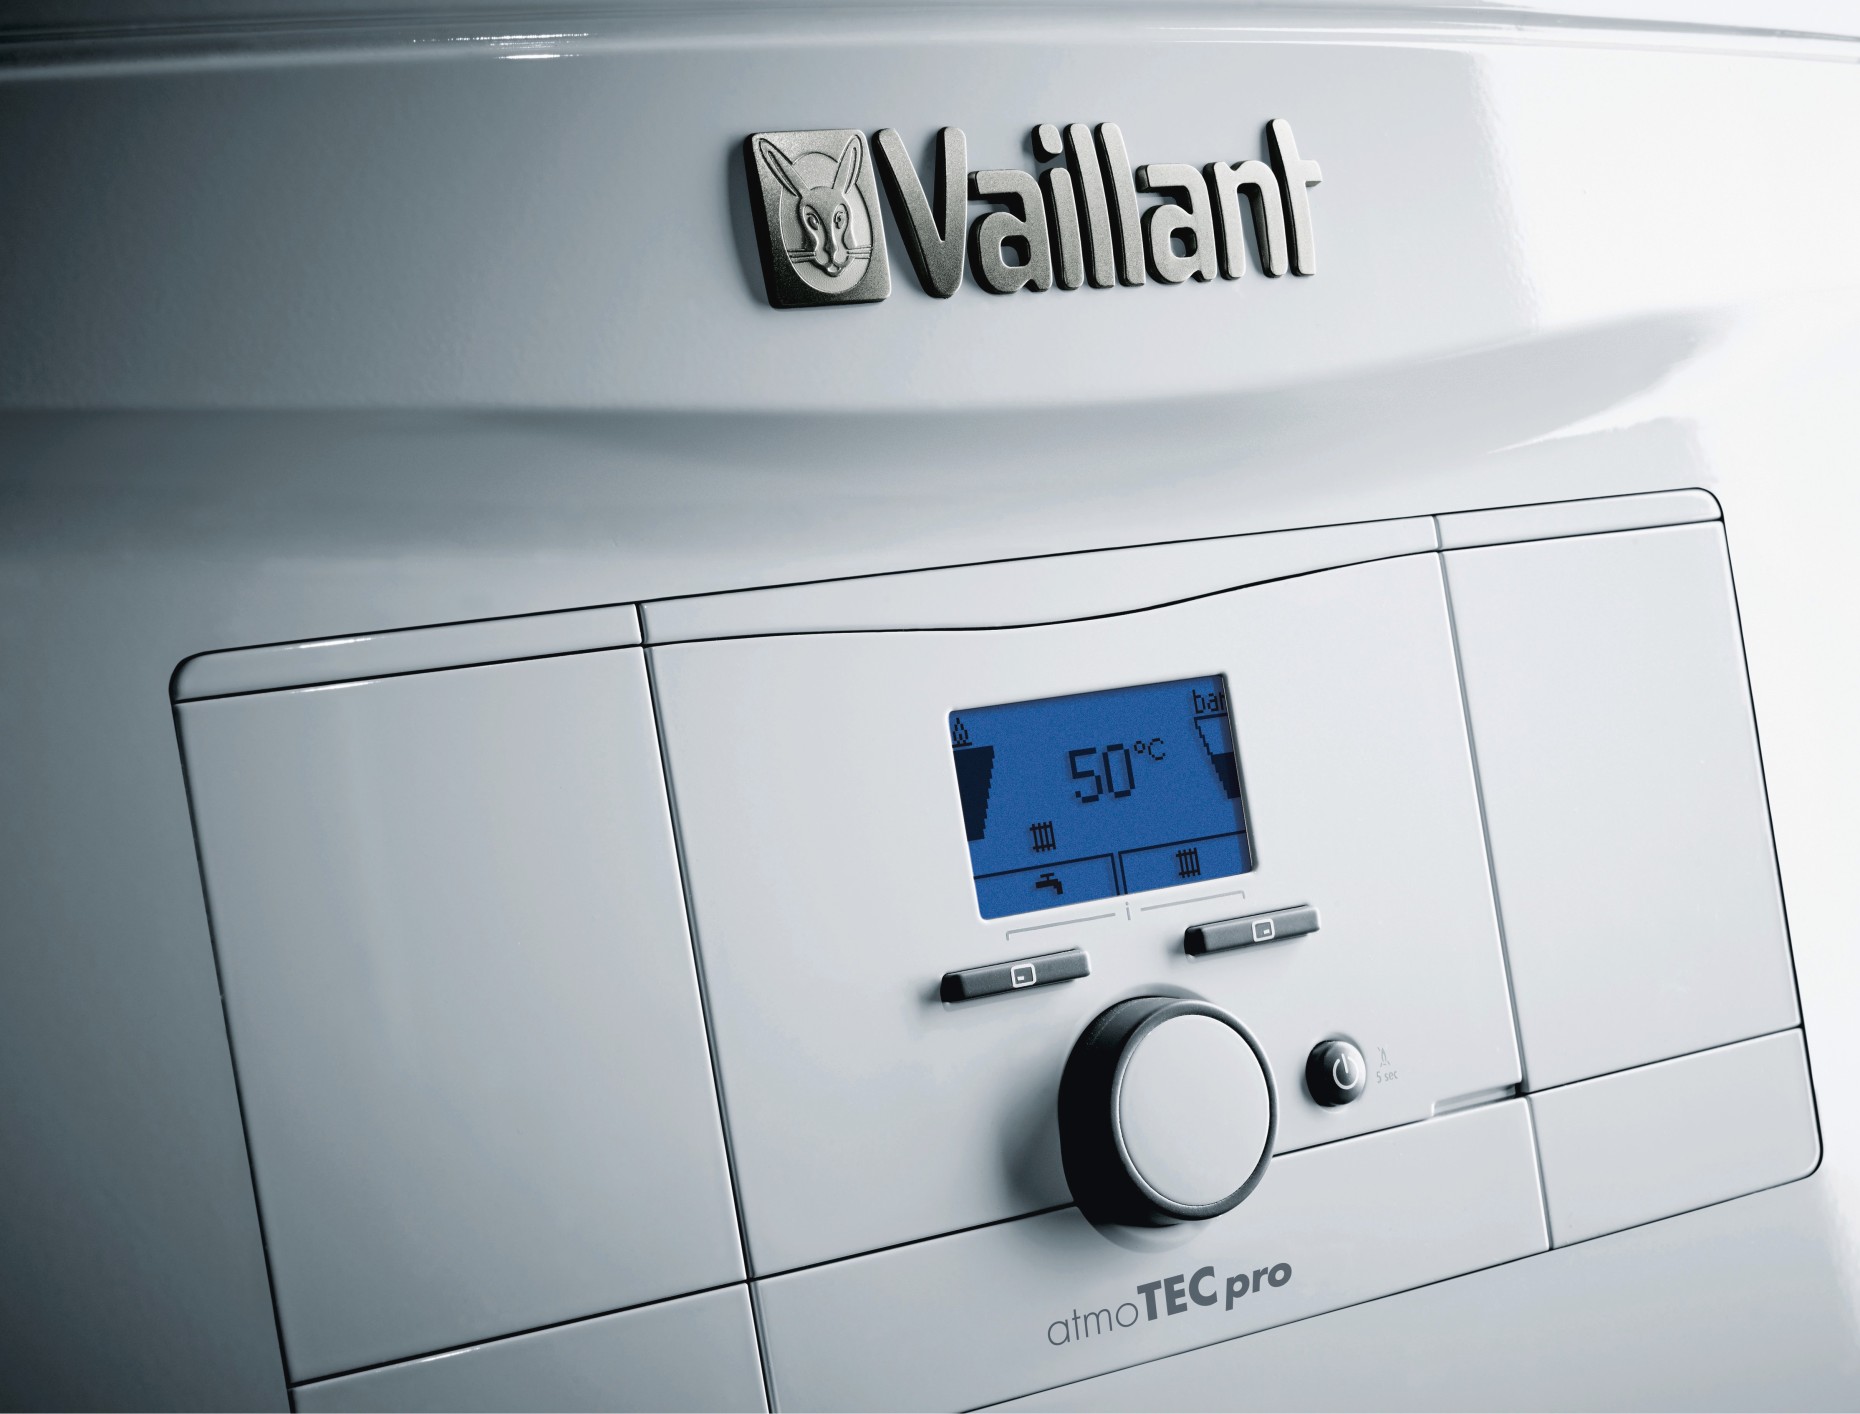 Газовый котел Vaillant atmoTec Pro VUW 200/5-3 цена 36000.00 грн - фотография 2